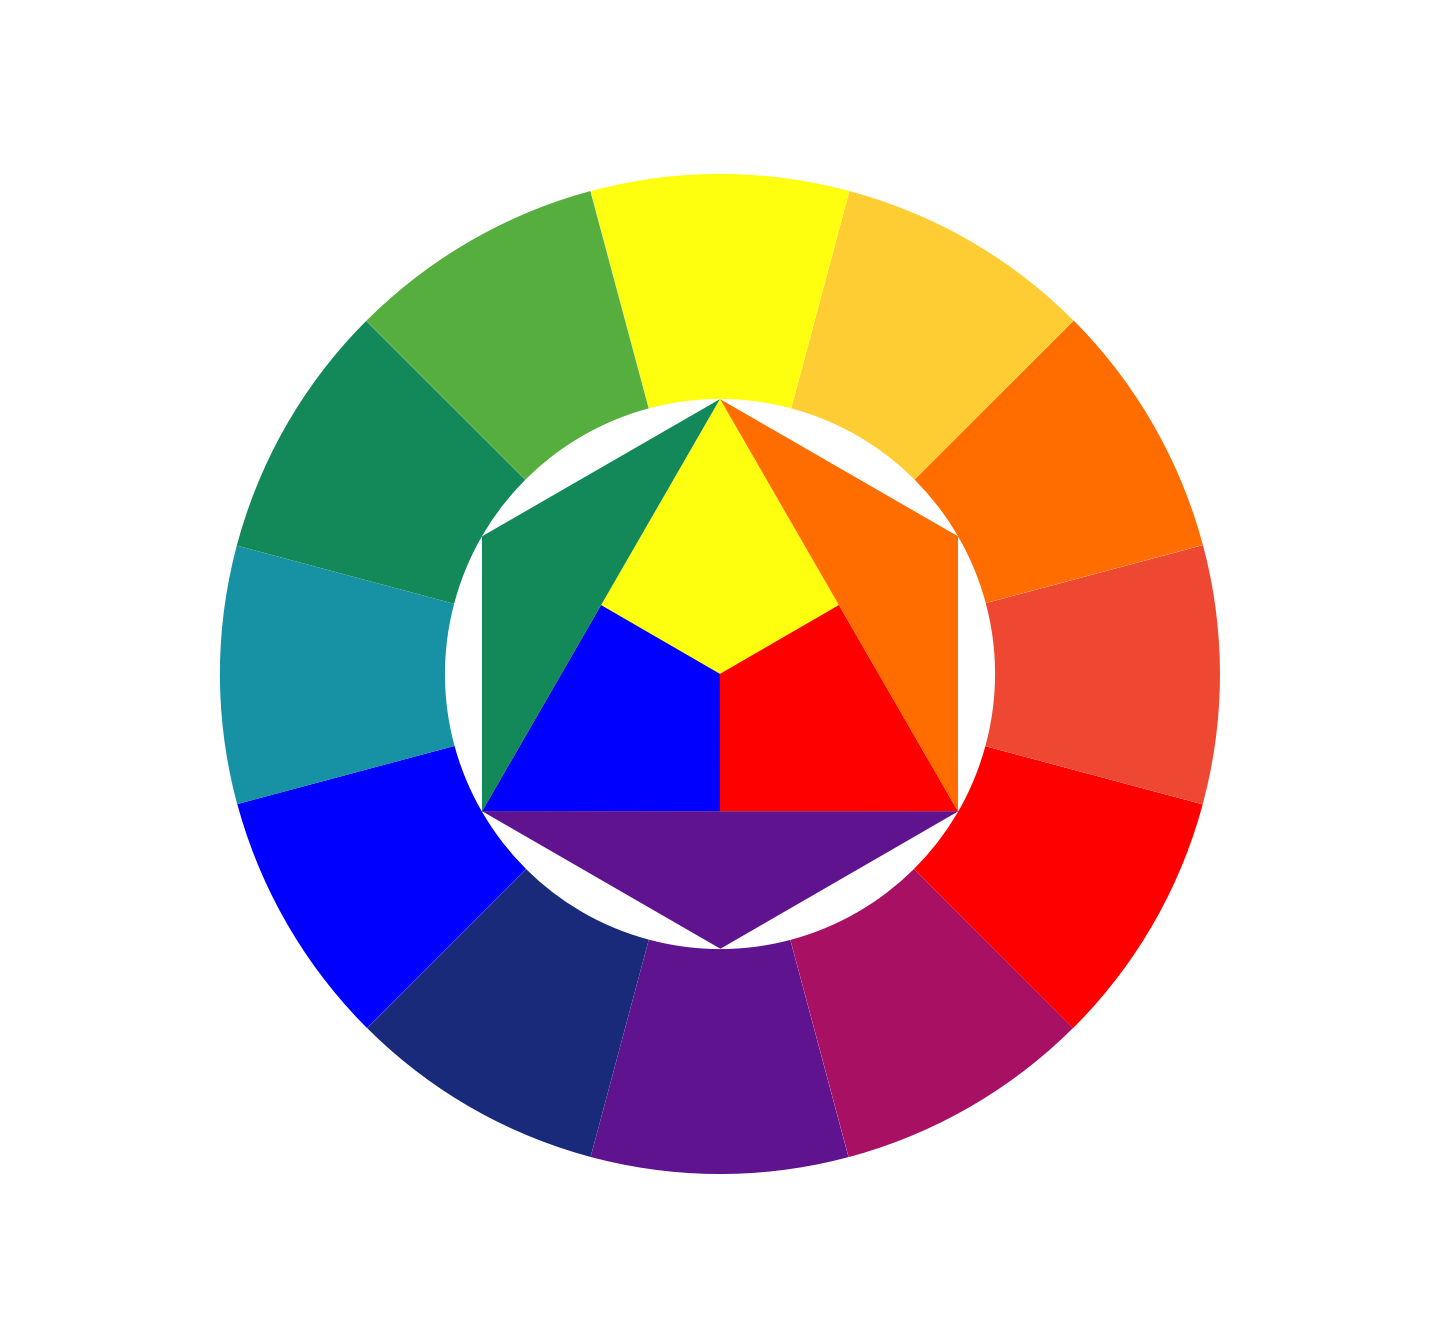 Круг Иоханнеса Иттена. Цветовой спектр Иттена. Иоганнес Иттен цветовой круг. Цветовой круг Иттена контрасты.